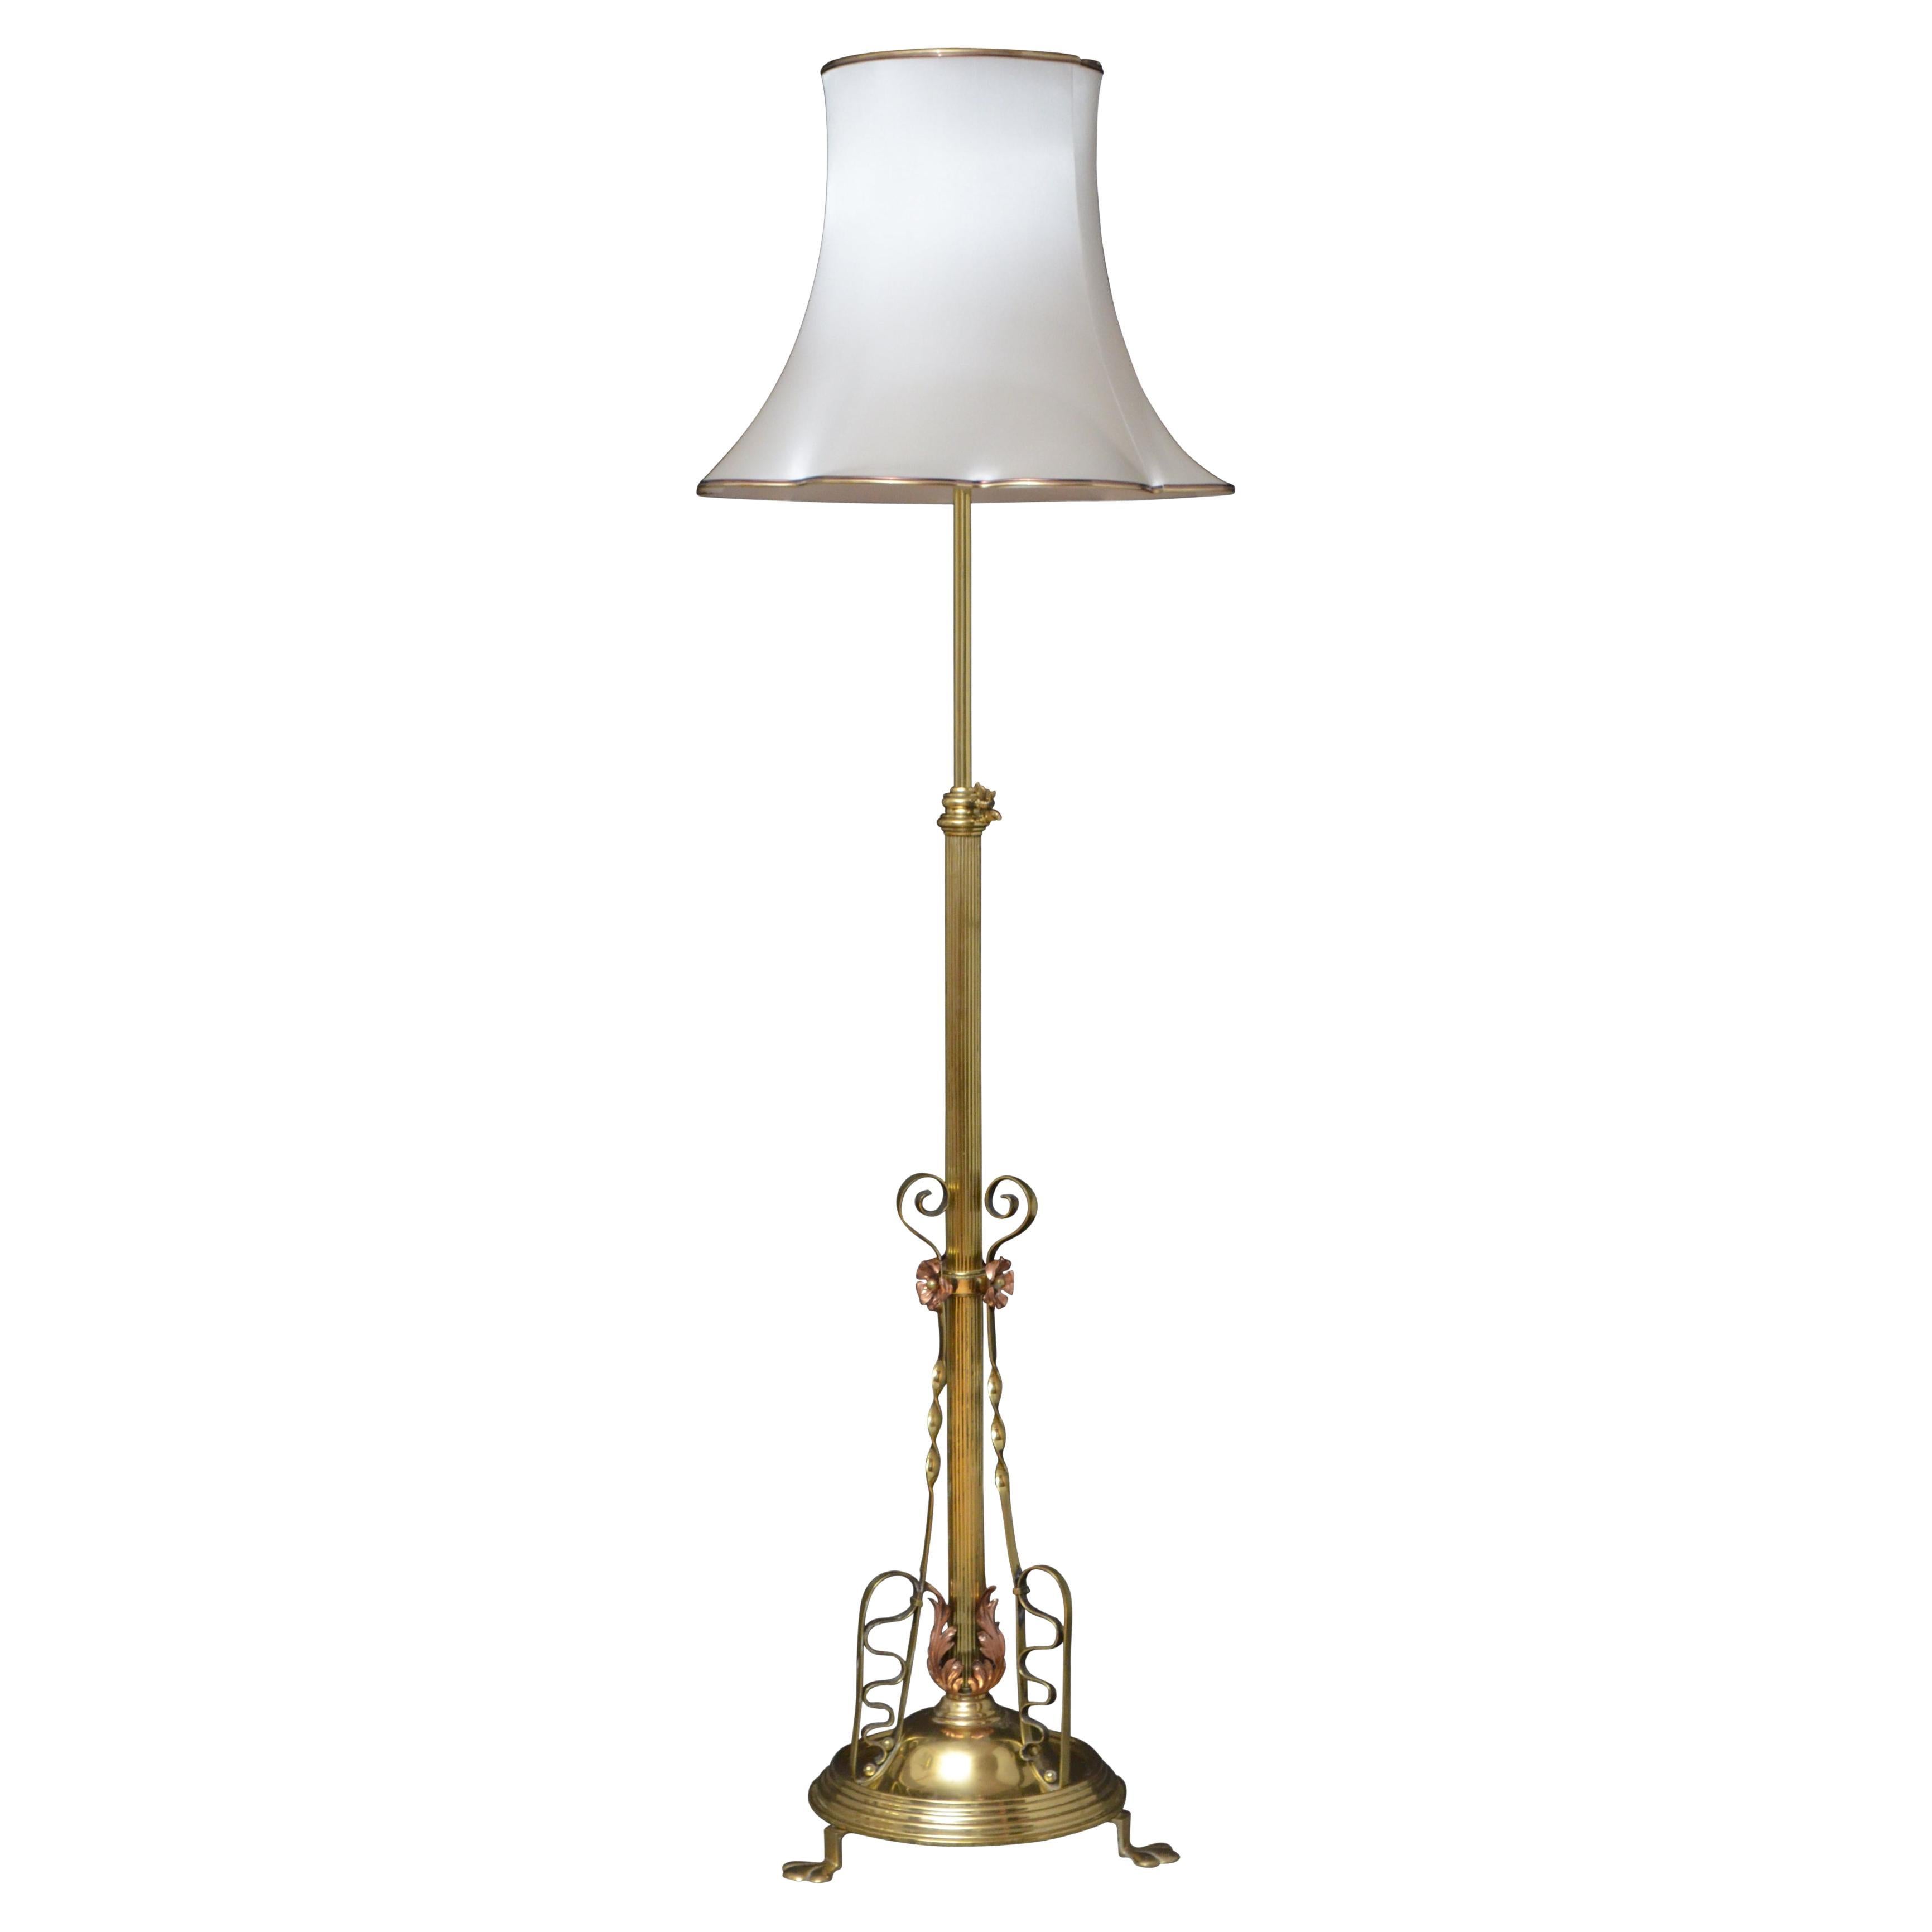 Exceptional Art Nouveau Floor Standard Lamp